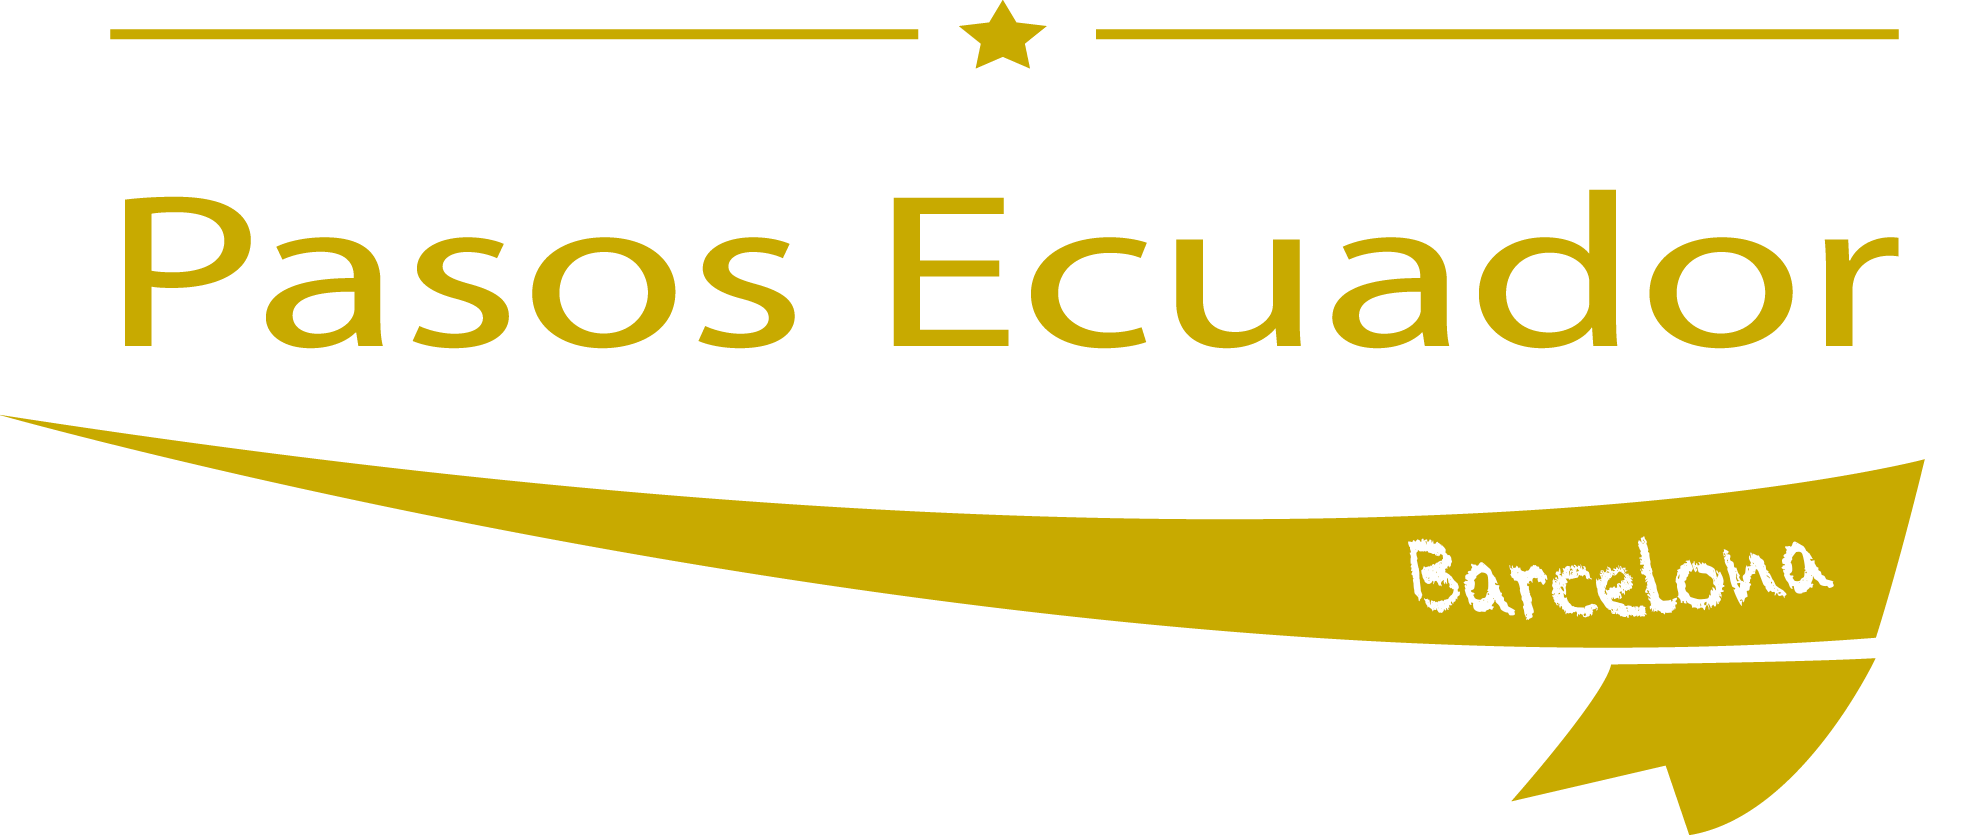 Tu mejor fiesta de paso de Ecuador Barcelona